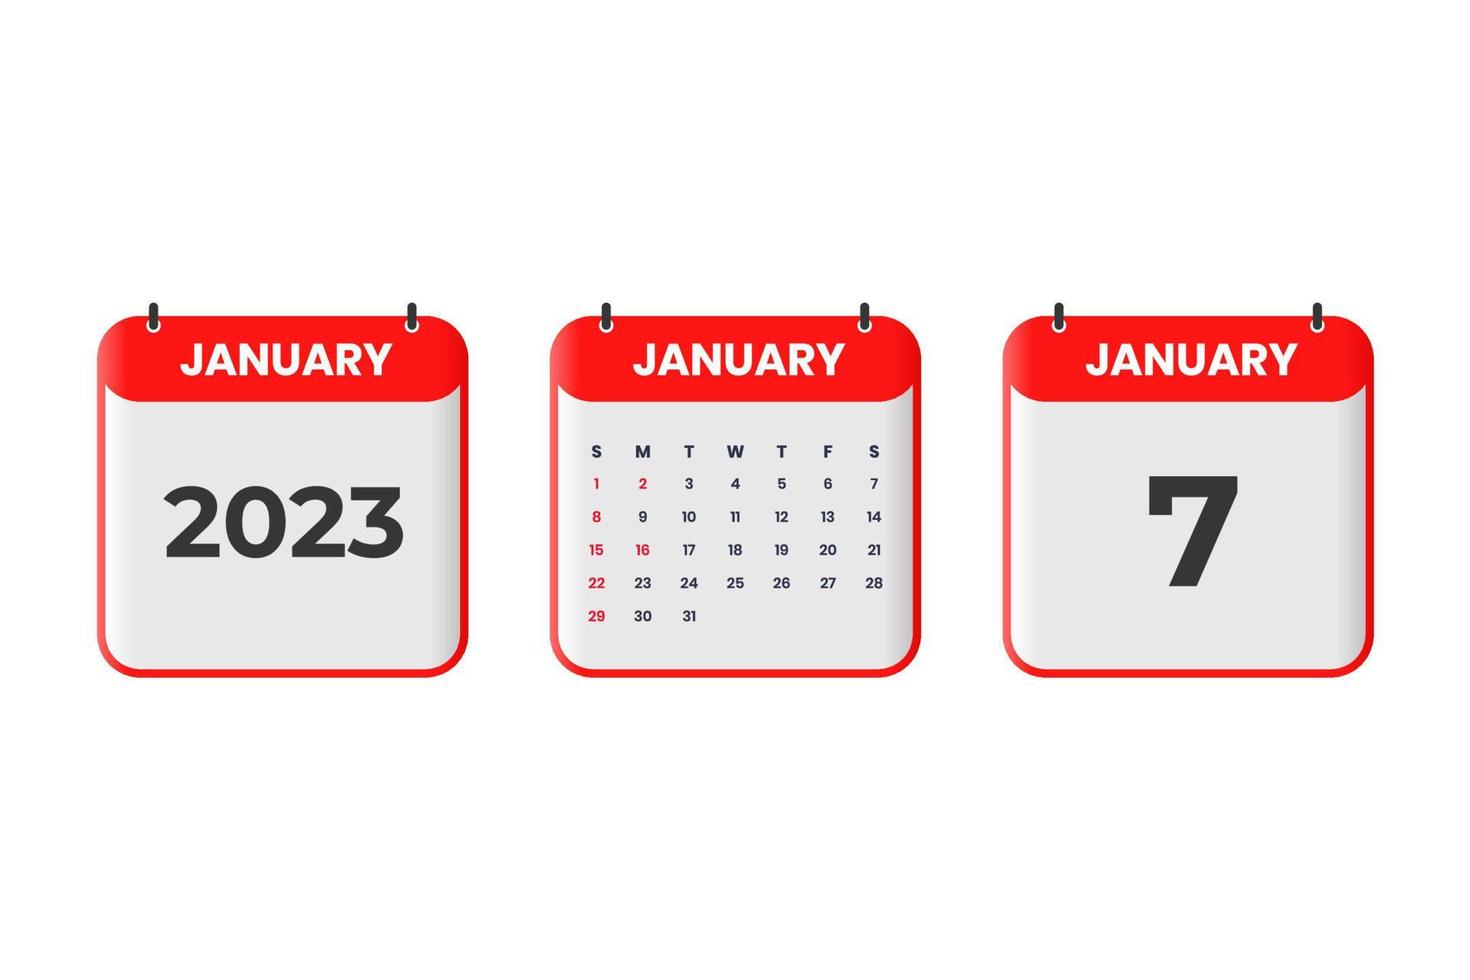 januari 2023 kalender design. 7:e januari 2023 kalender ikon för schema, utnämning, Viktig datum begrepp vektor